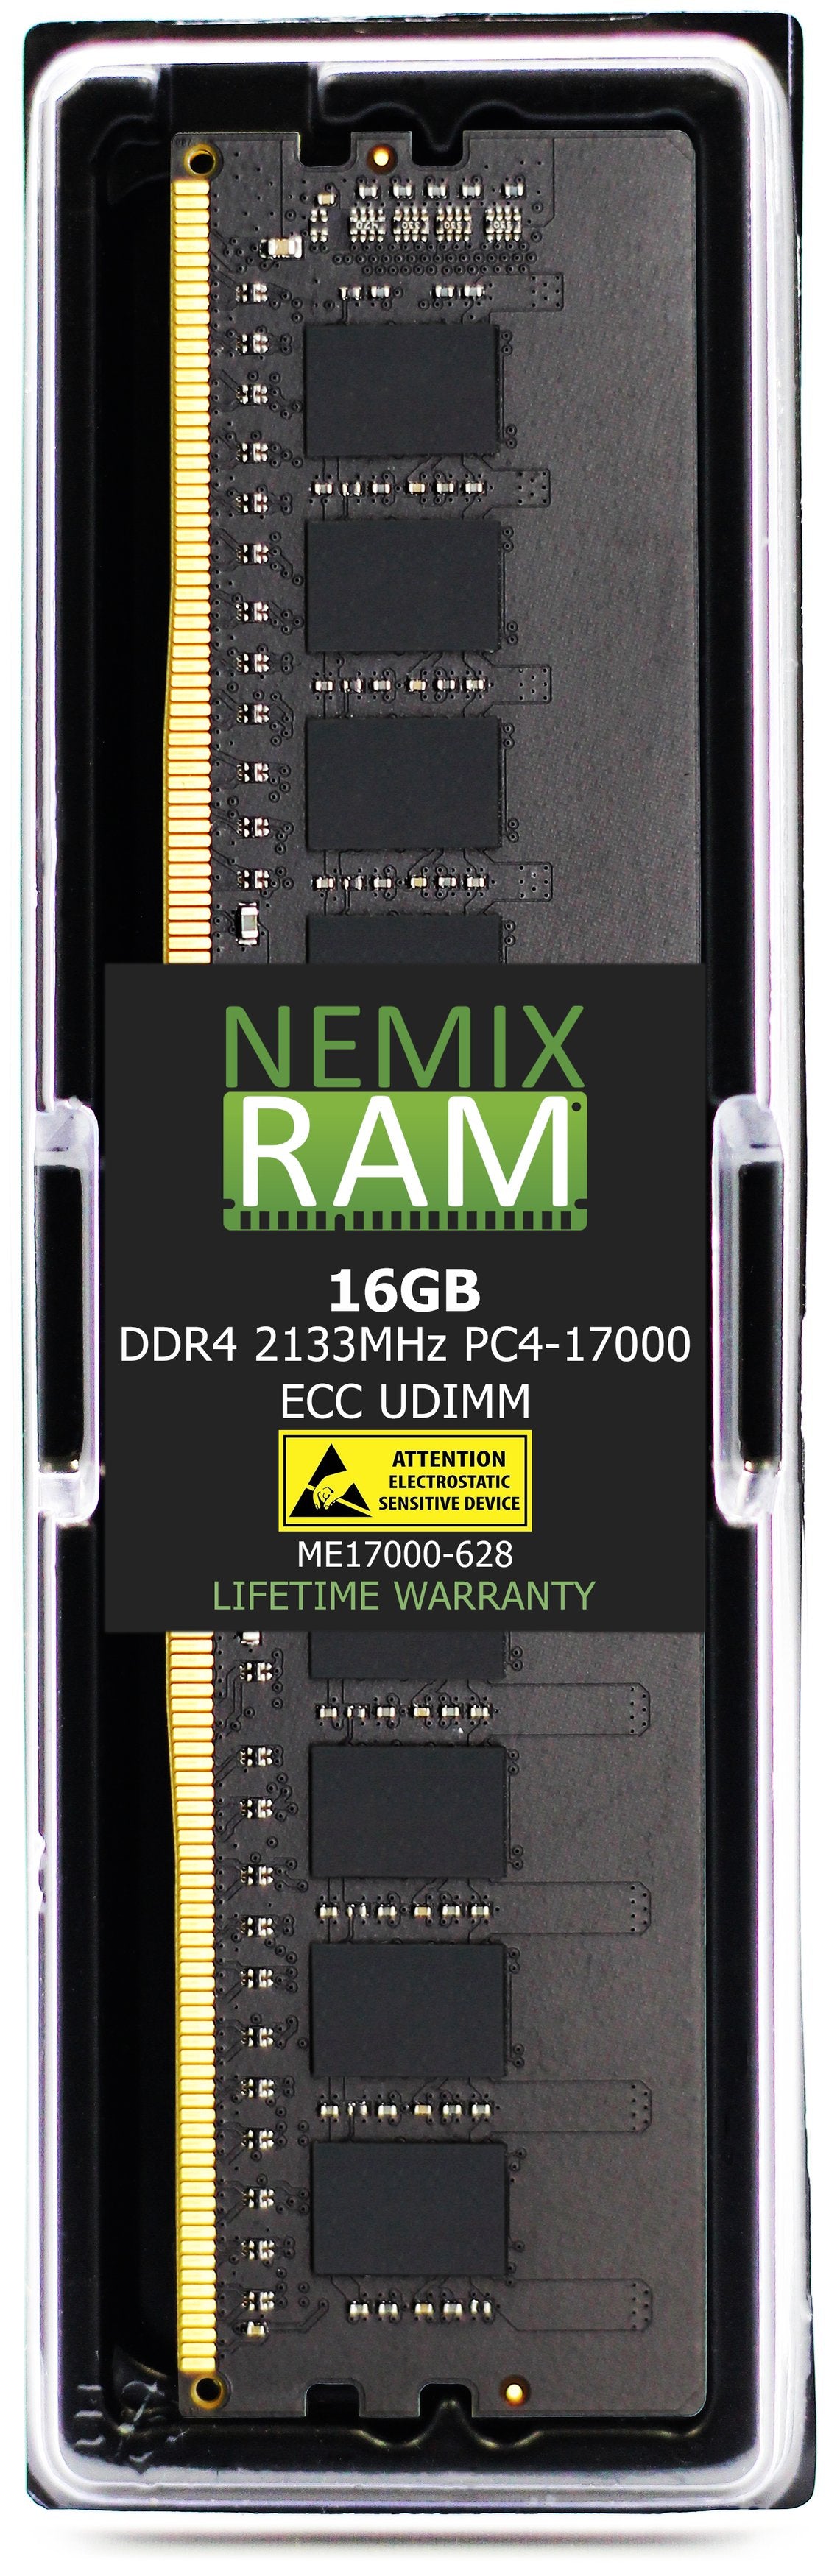 16GB DDR4 2133MHZ PC4-17000 ECC UDIMM Compatible with Supermicro MEM-DR416L-HL01-EU21